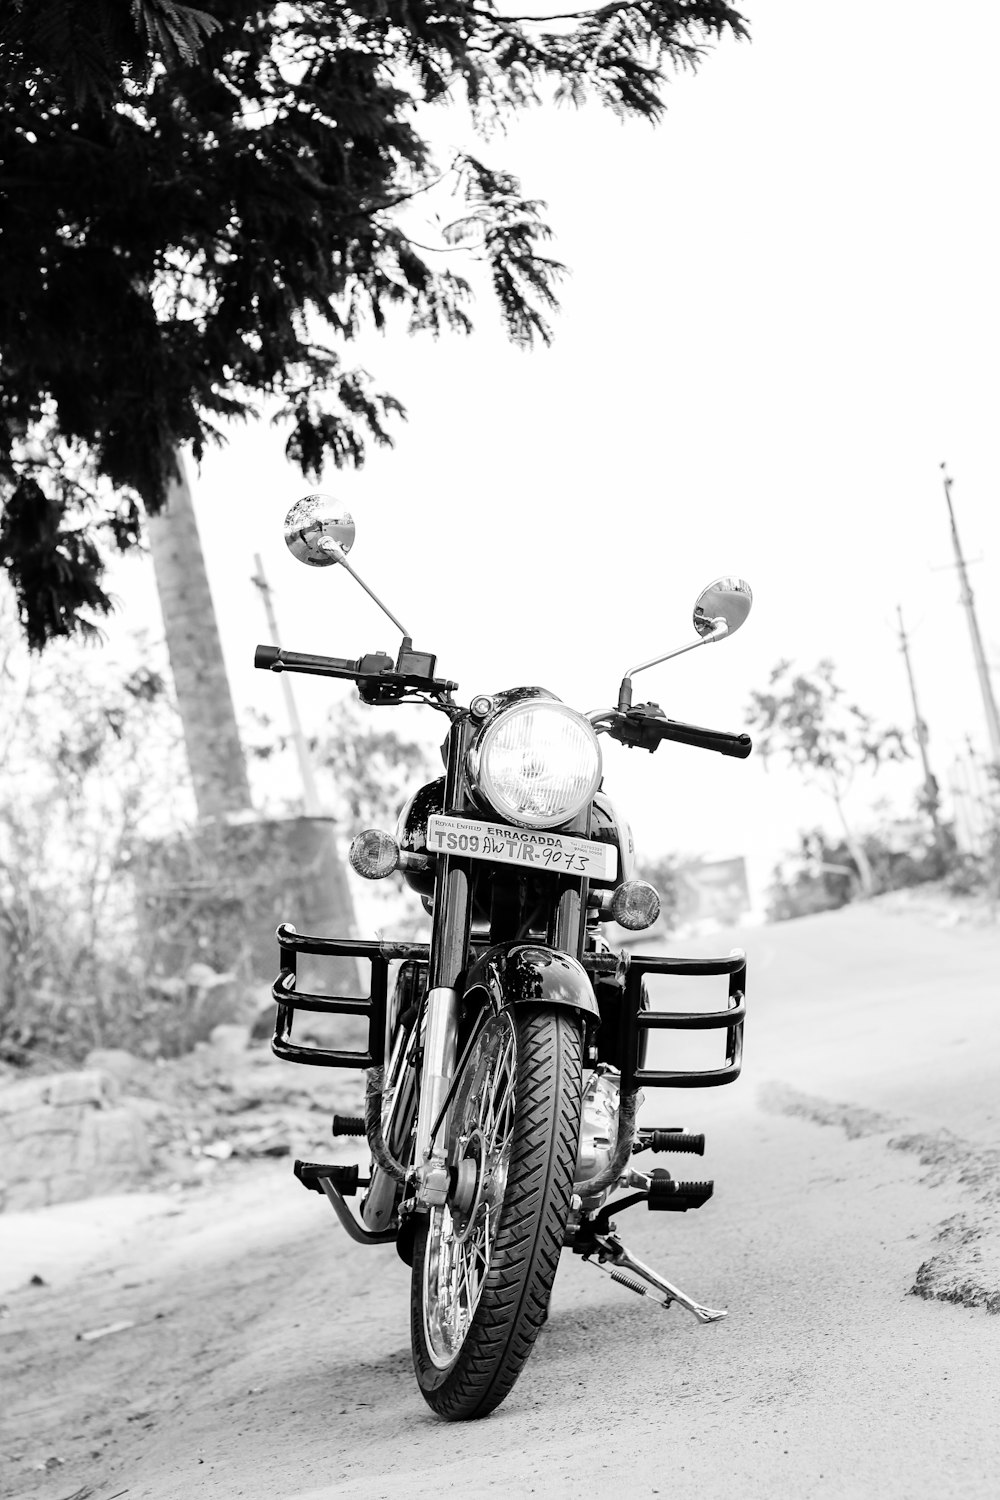 Foto in scala di grigi di una motocicletta parcheggiata sulla strada